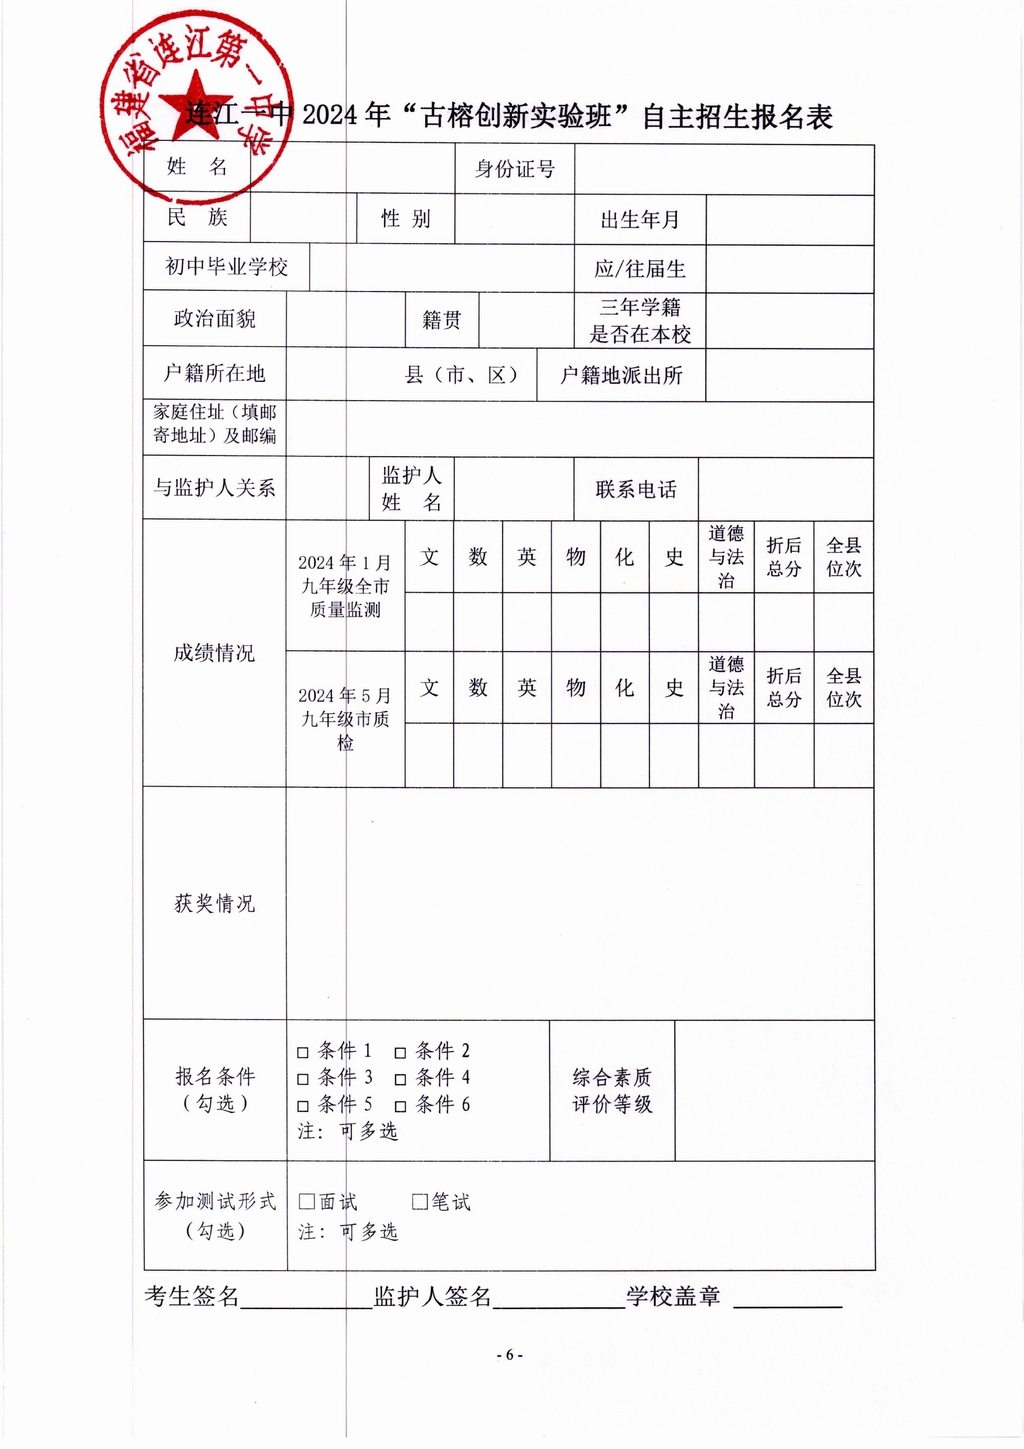 2024年连江一中“古榕创新实验班”自主招生方案(1)_05.jpg